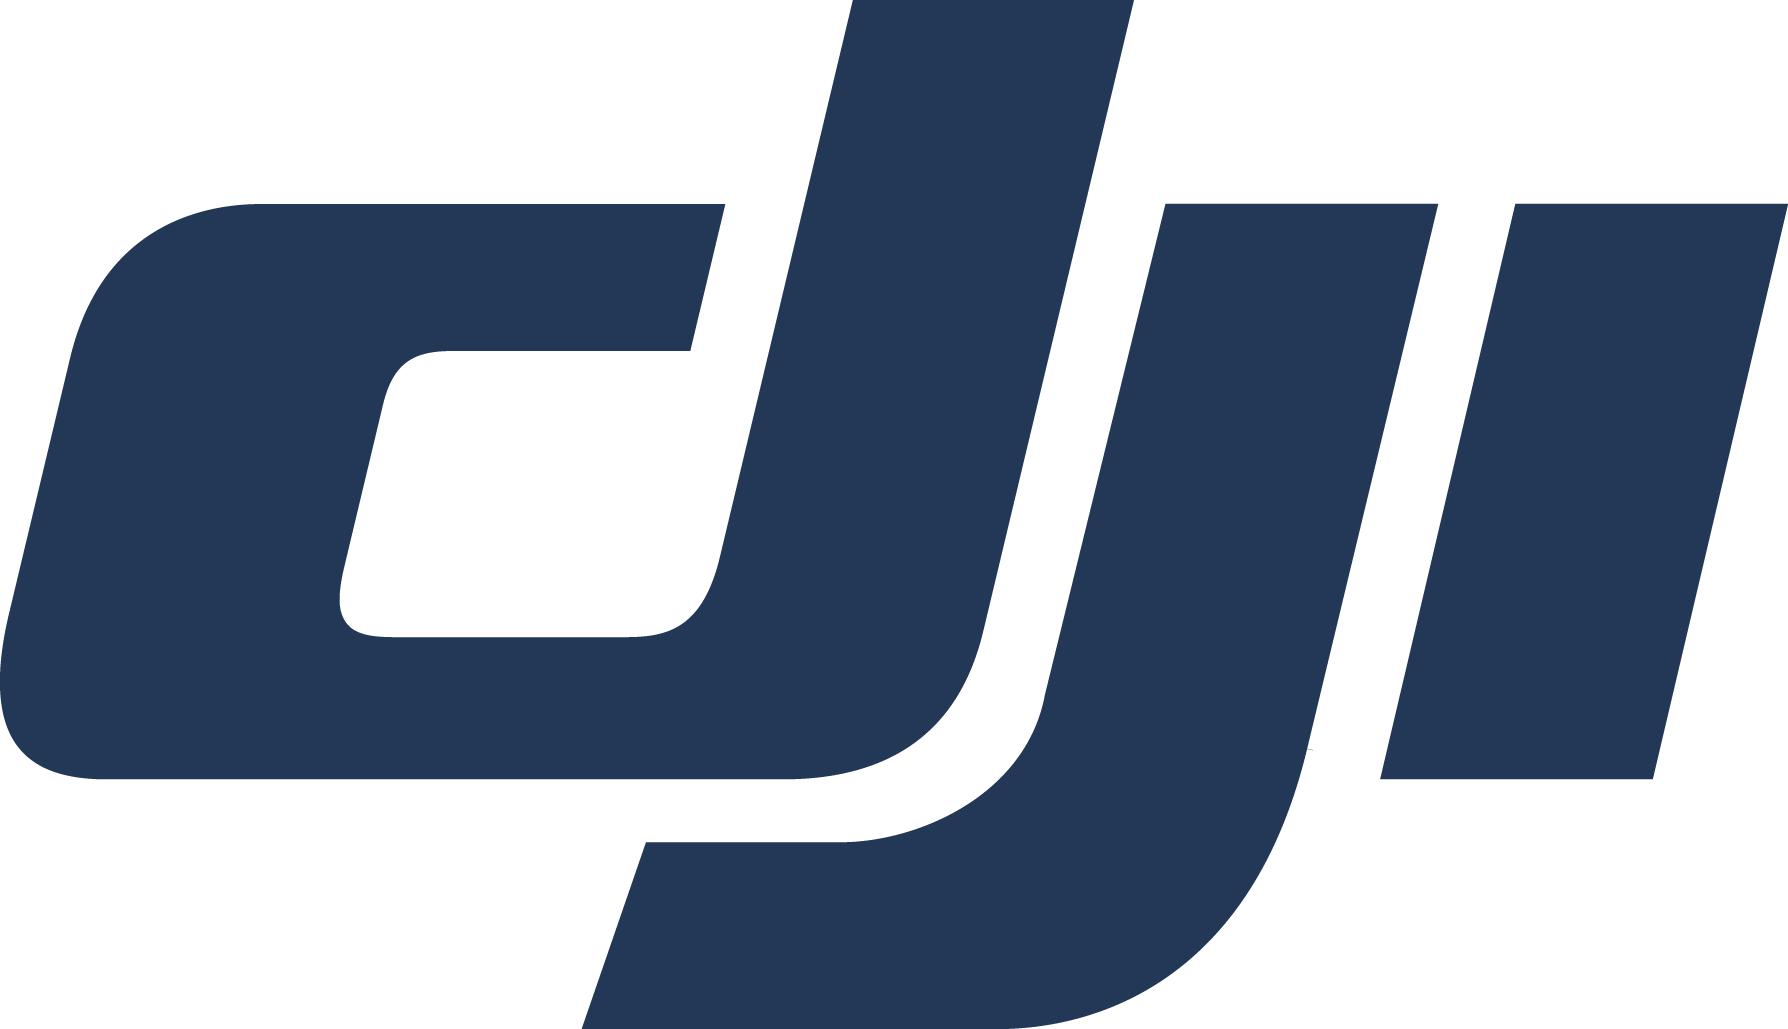 DJI-logo.png